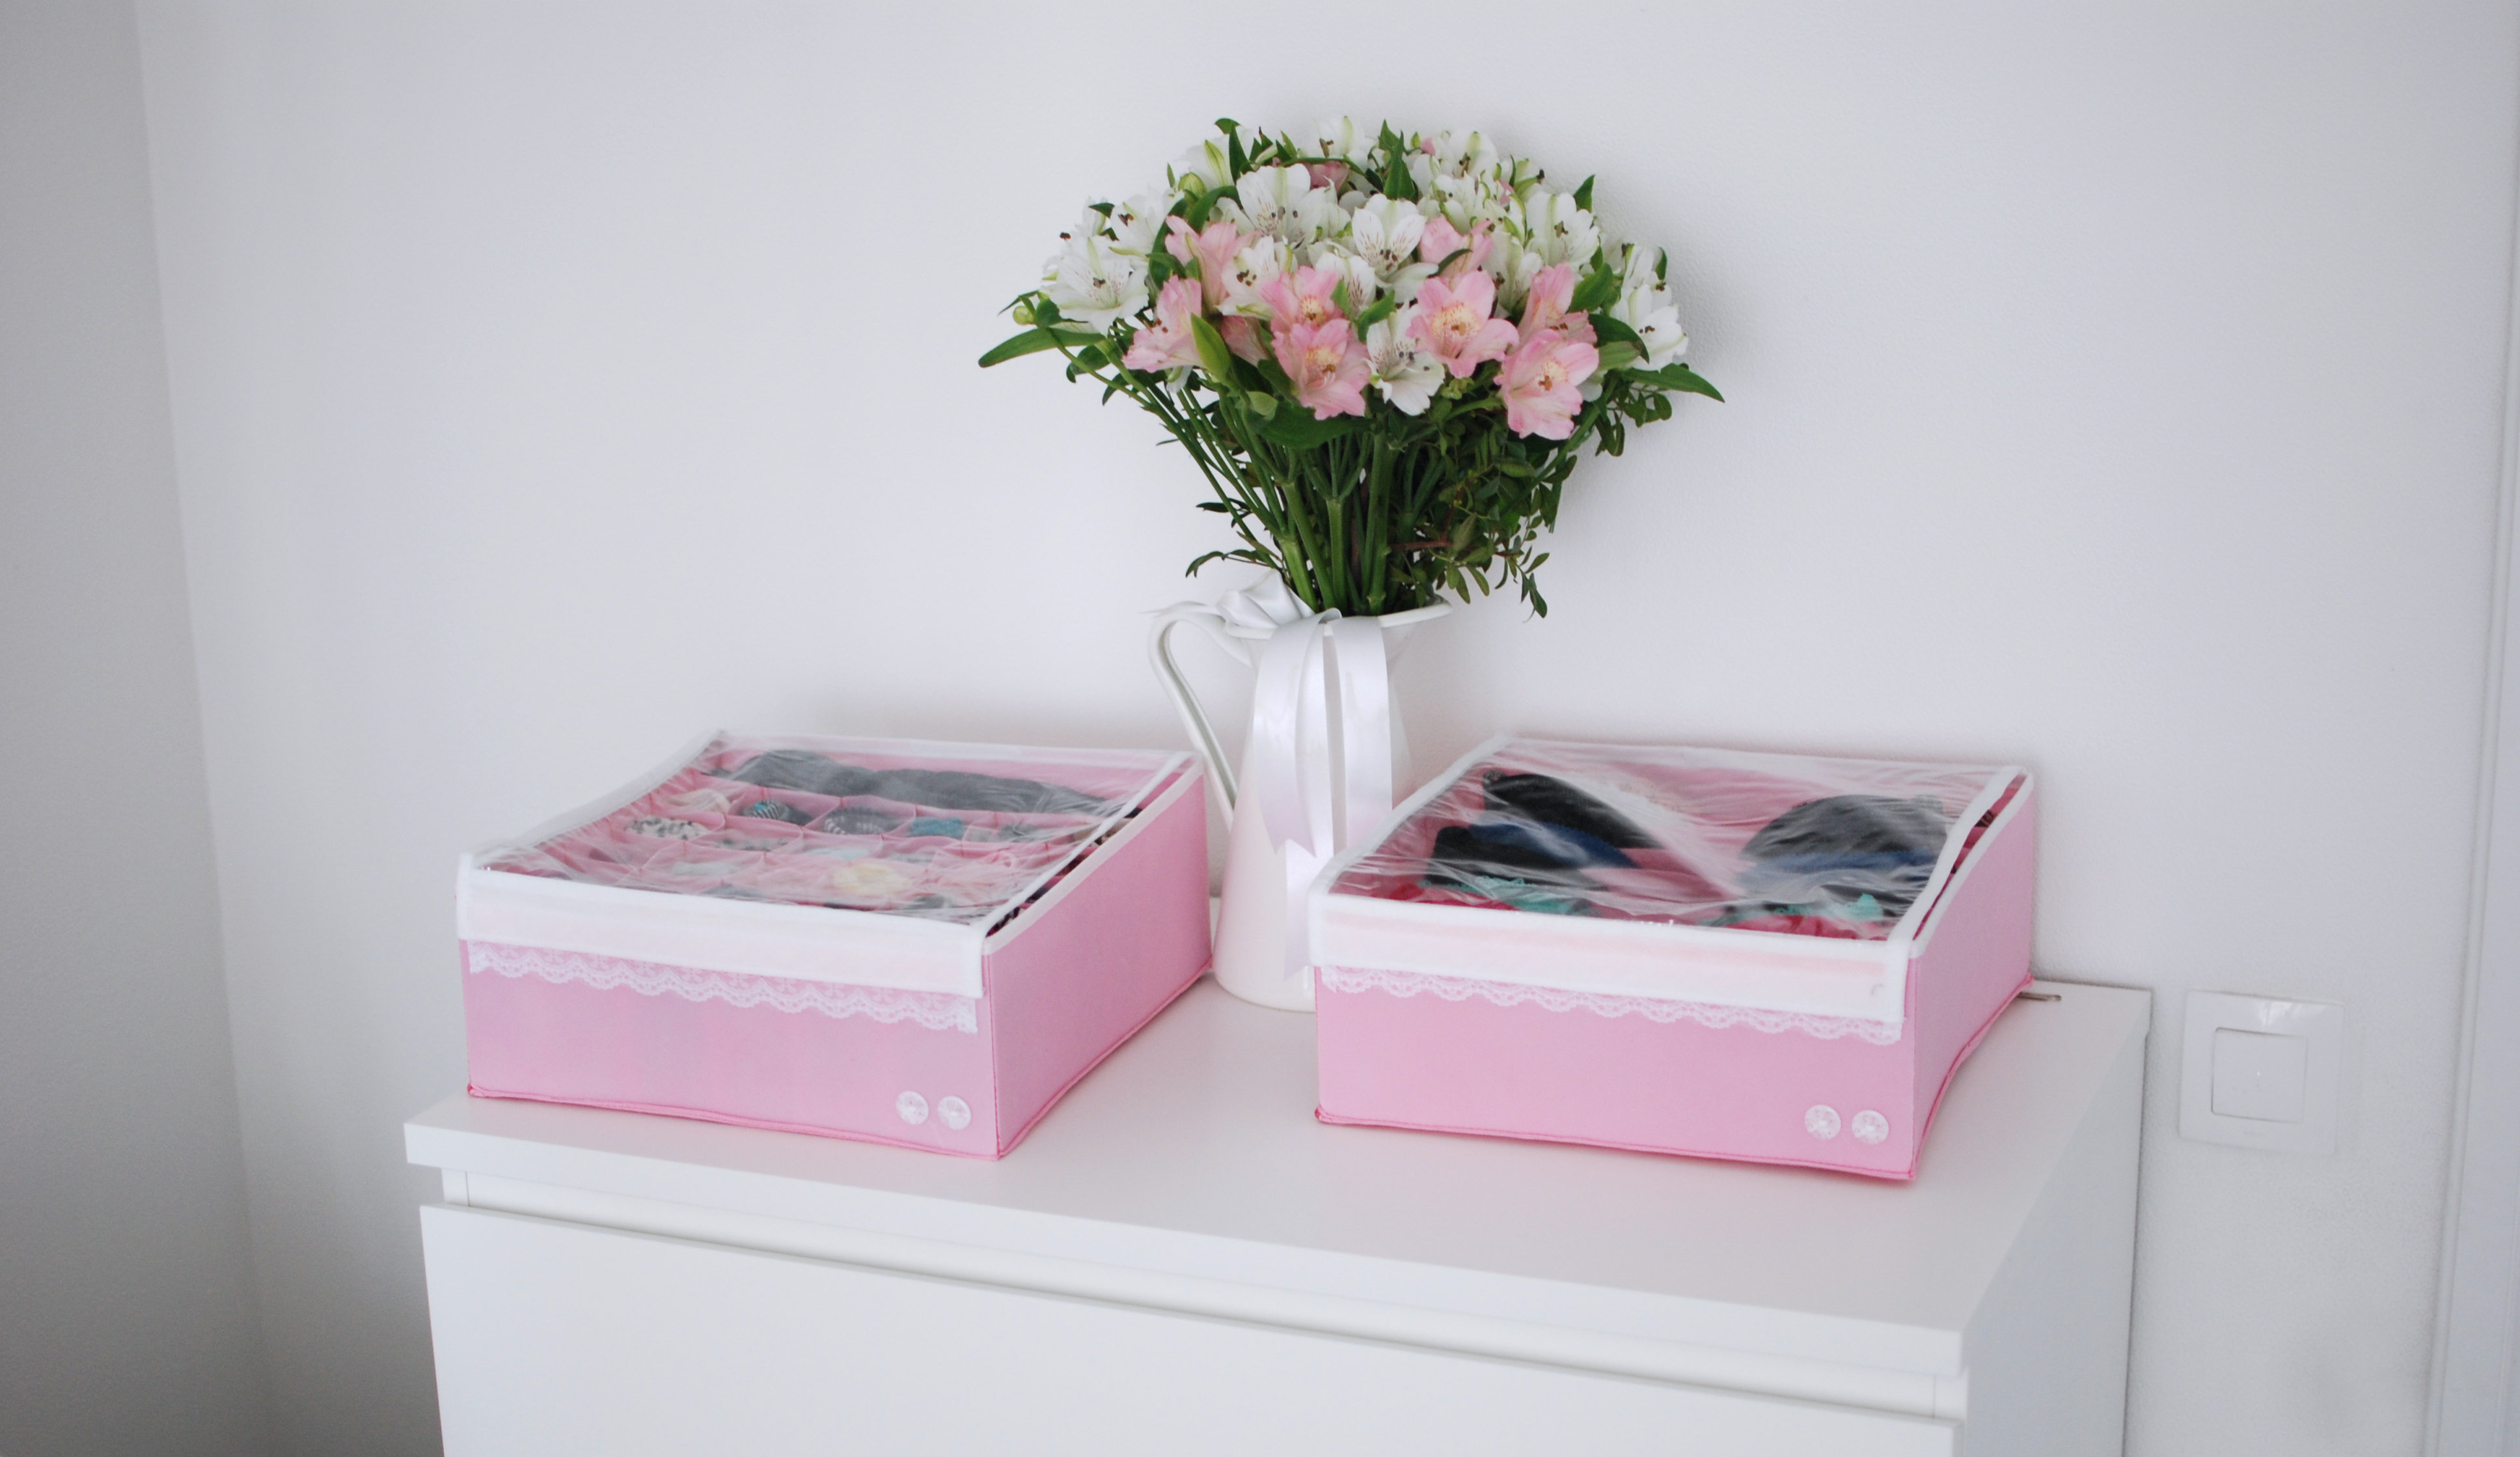 Органайзер для белья (2 шт.) Широкий "Berry Cake" розовый с крышками - коробки для хранения